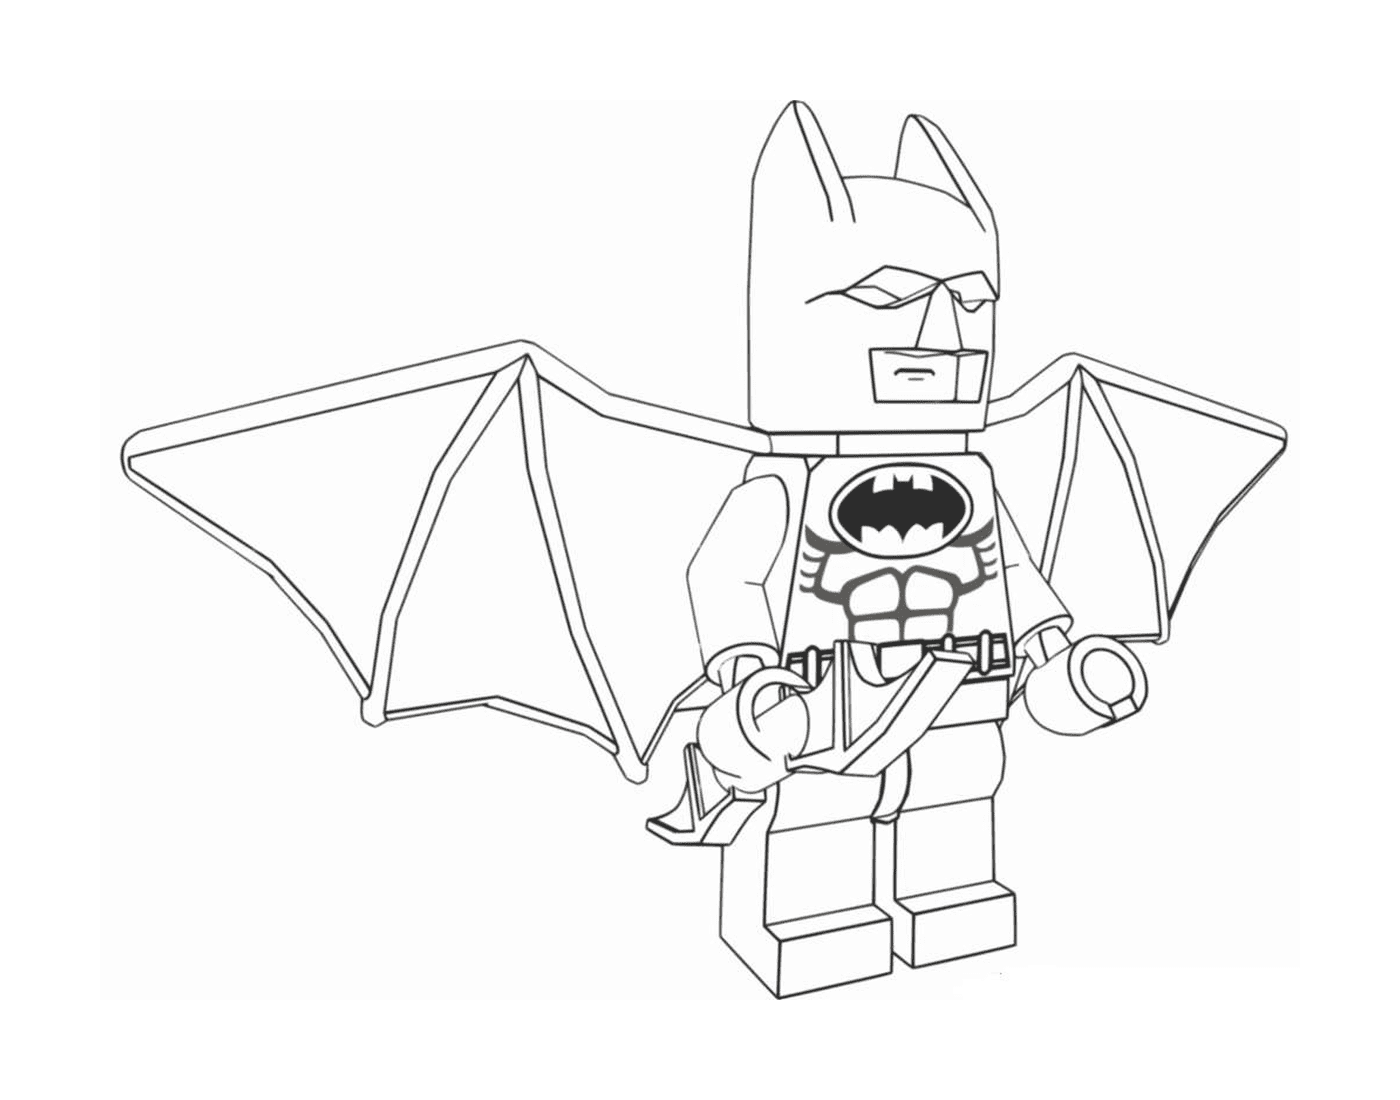  Prinpo Lego 蝙蝠侠颜色 